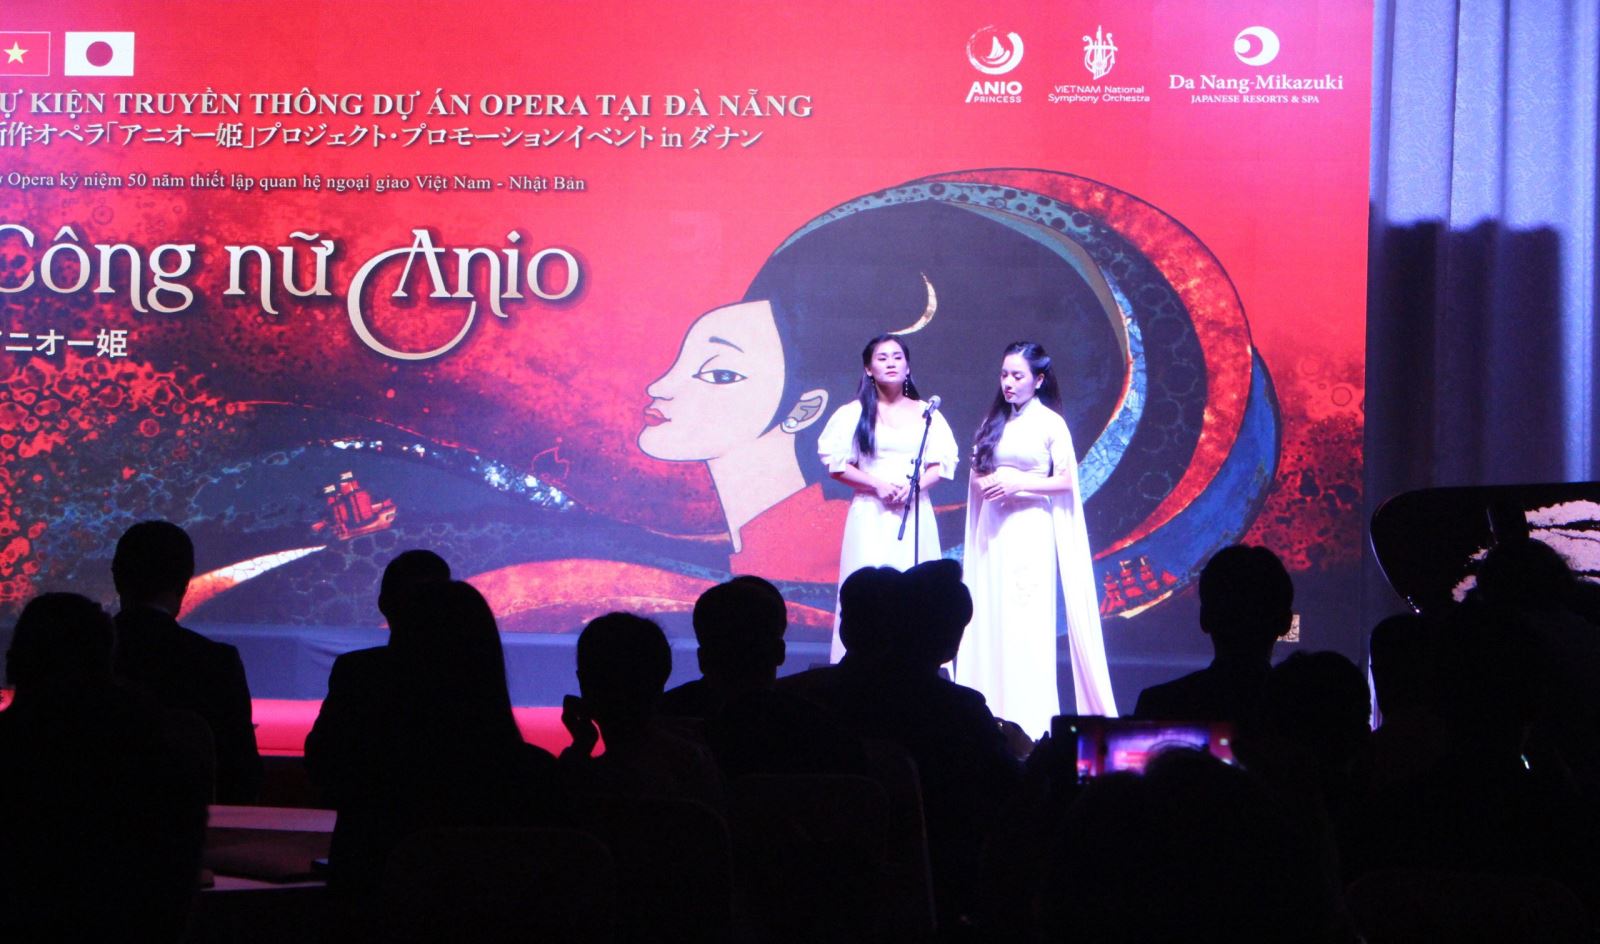 Đà Nẵng: Công bố sự kiện âm nhạc “Công nữ Anio”